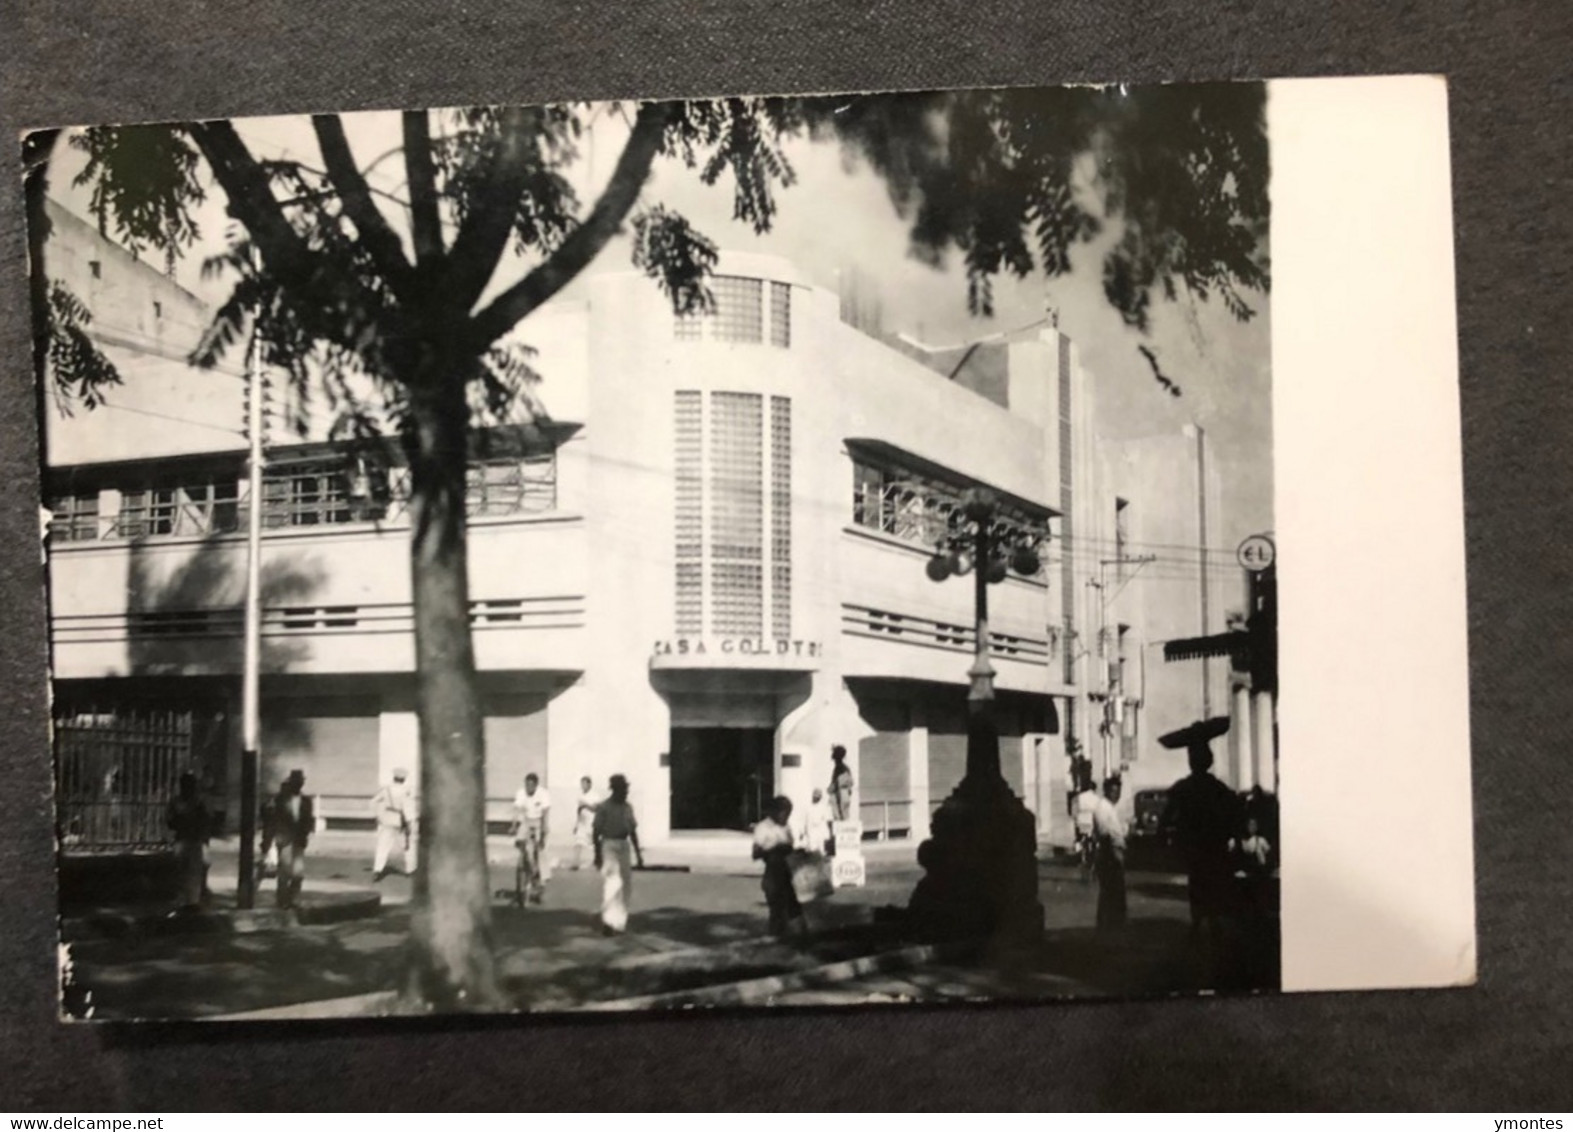 Postcard Building, San Salvador 1944 - El Salvador